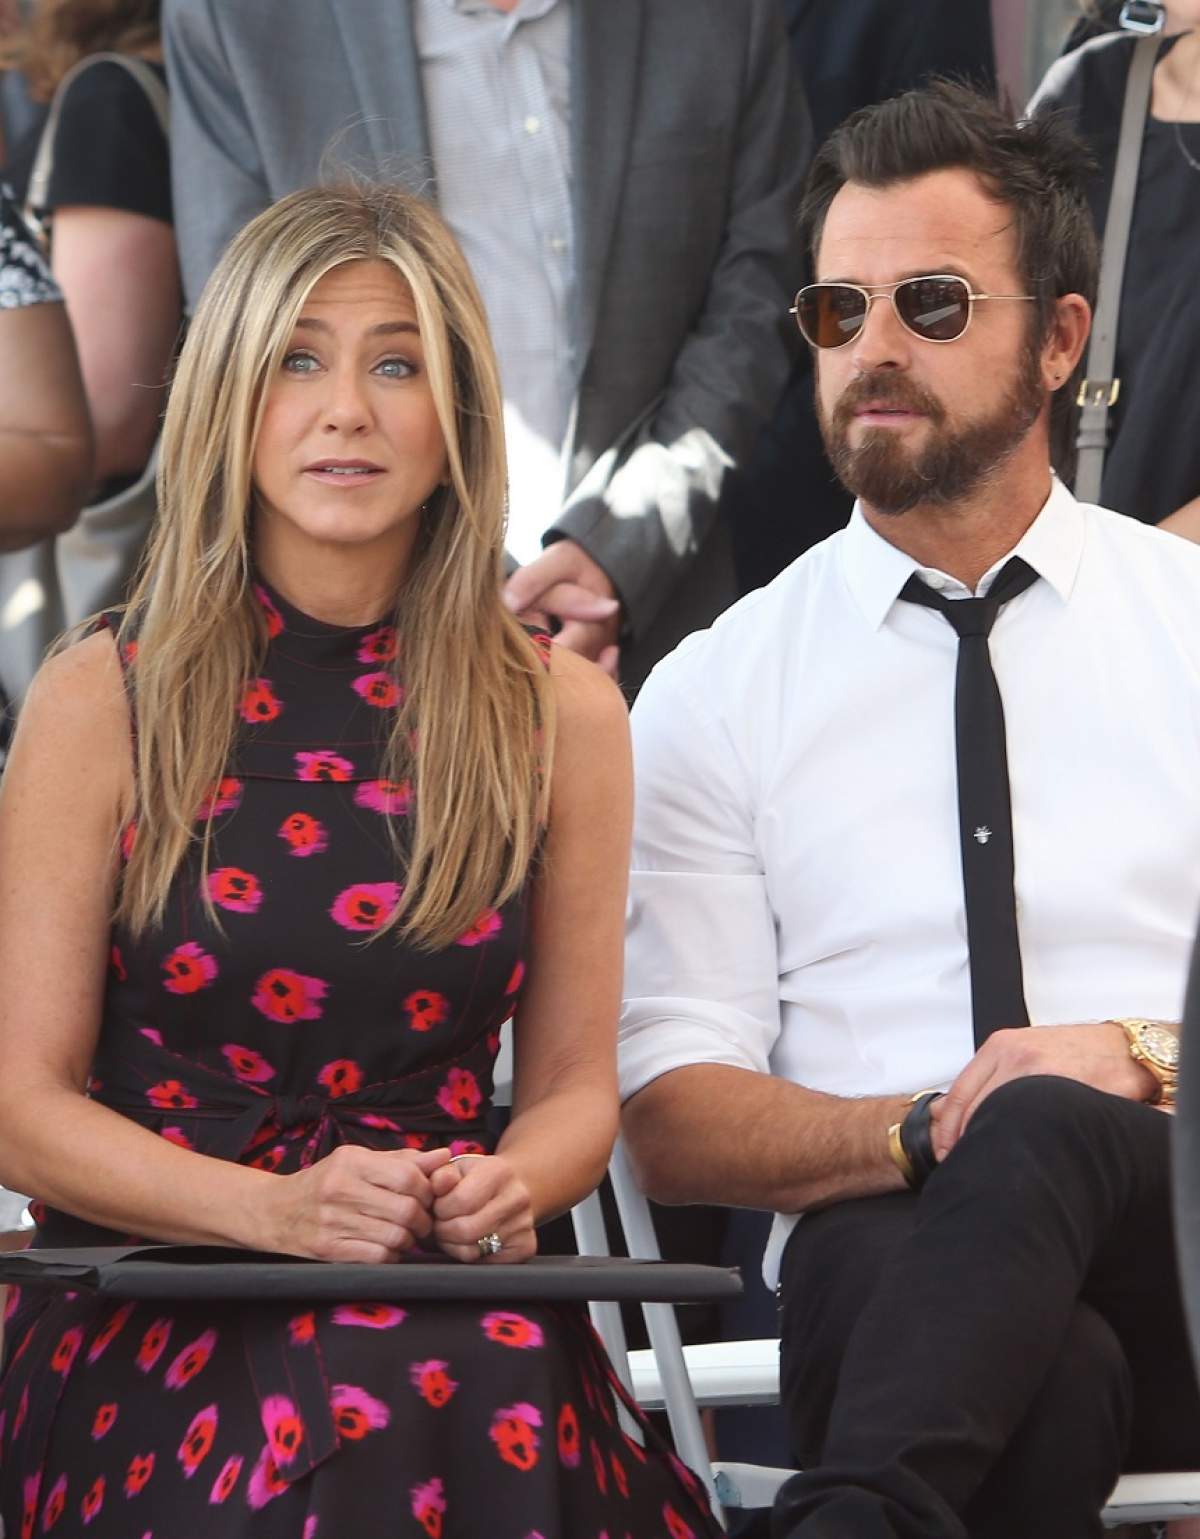 Jennifer Aniston şi Justin Theroux vor deveni părinţi! Au dezvăluit sexul copilului